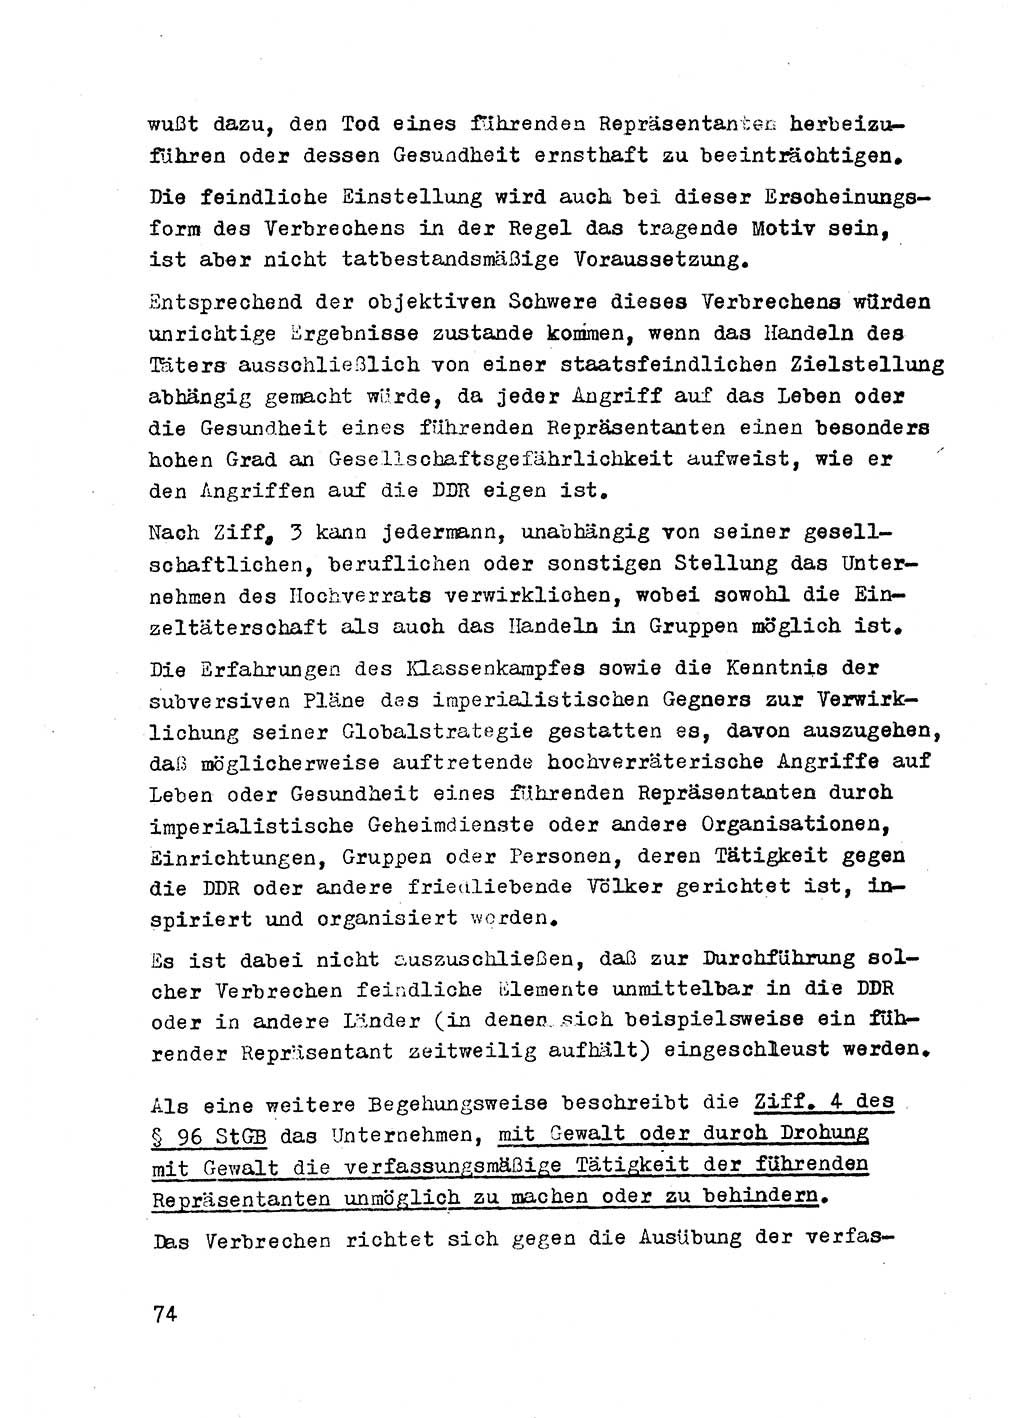 Strafrecht der DDR (Deutsche Demokratische Republik), Besonderer Teil, Lehrmaterial, Heft 2 1969, Seite 74 (Strafr. DDR BT Lehrmat. H. 2 1969, S. 74)